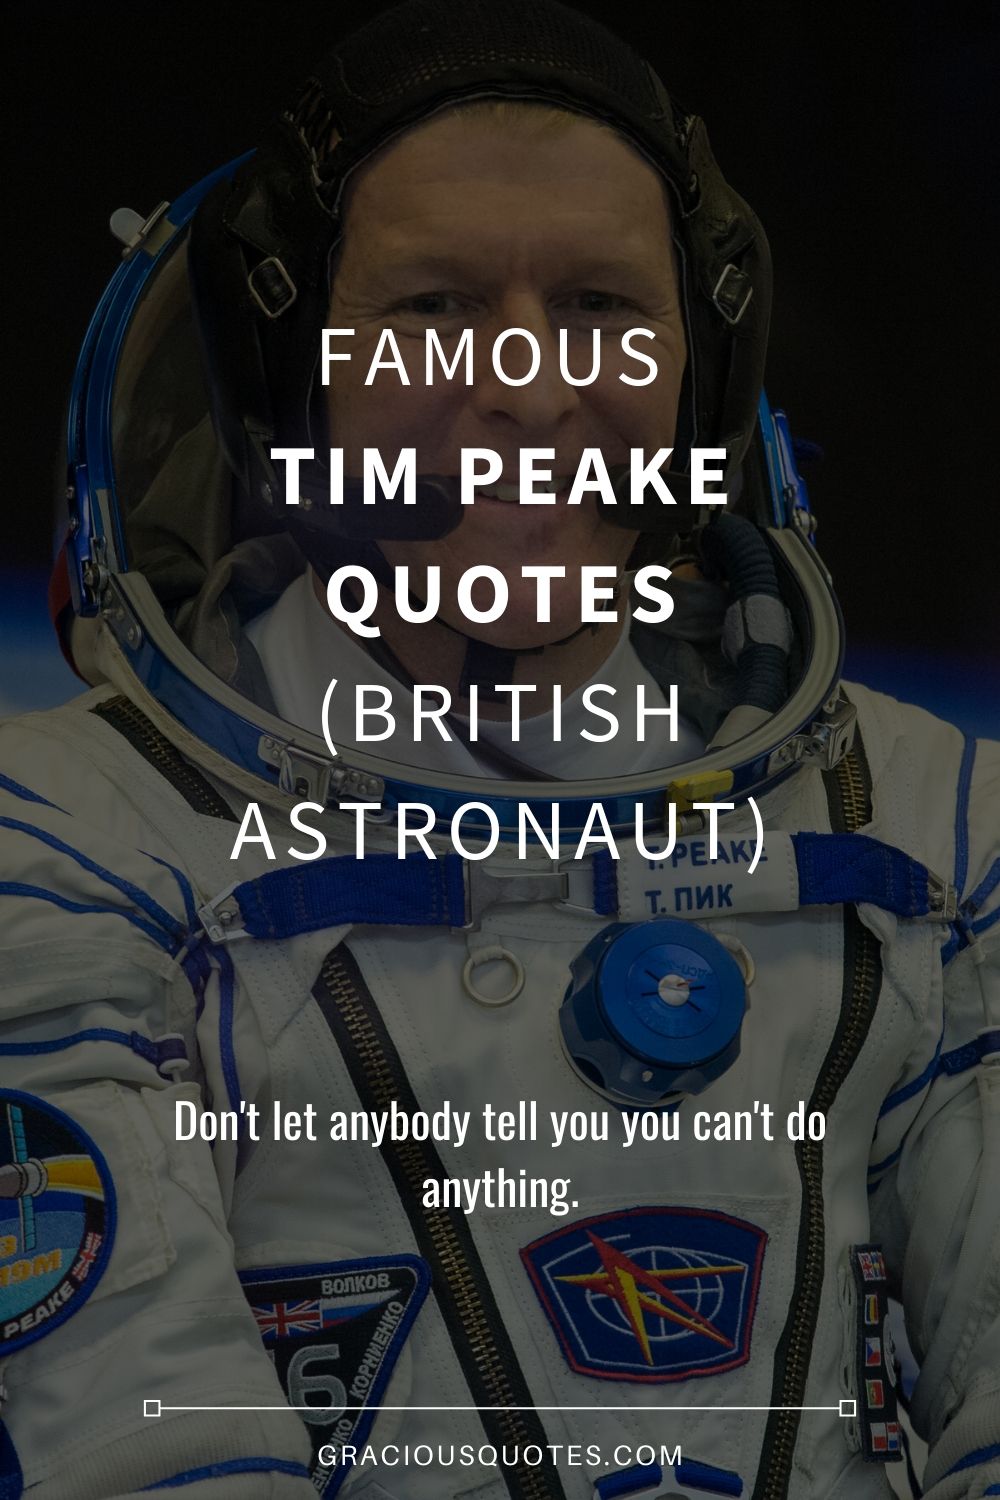 Famous Tim Peake Quotes (BRITISH ASTRONAUT) - Gracious Quotes